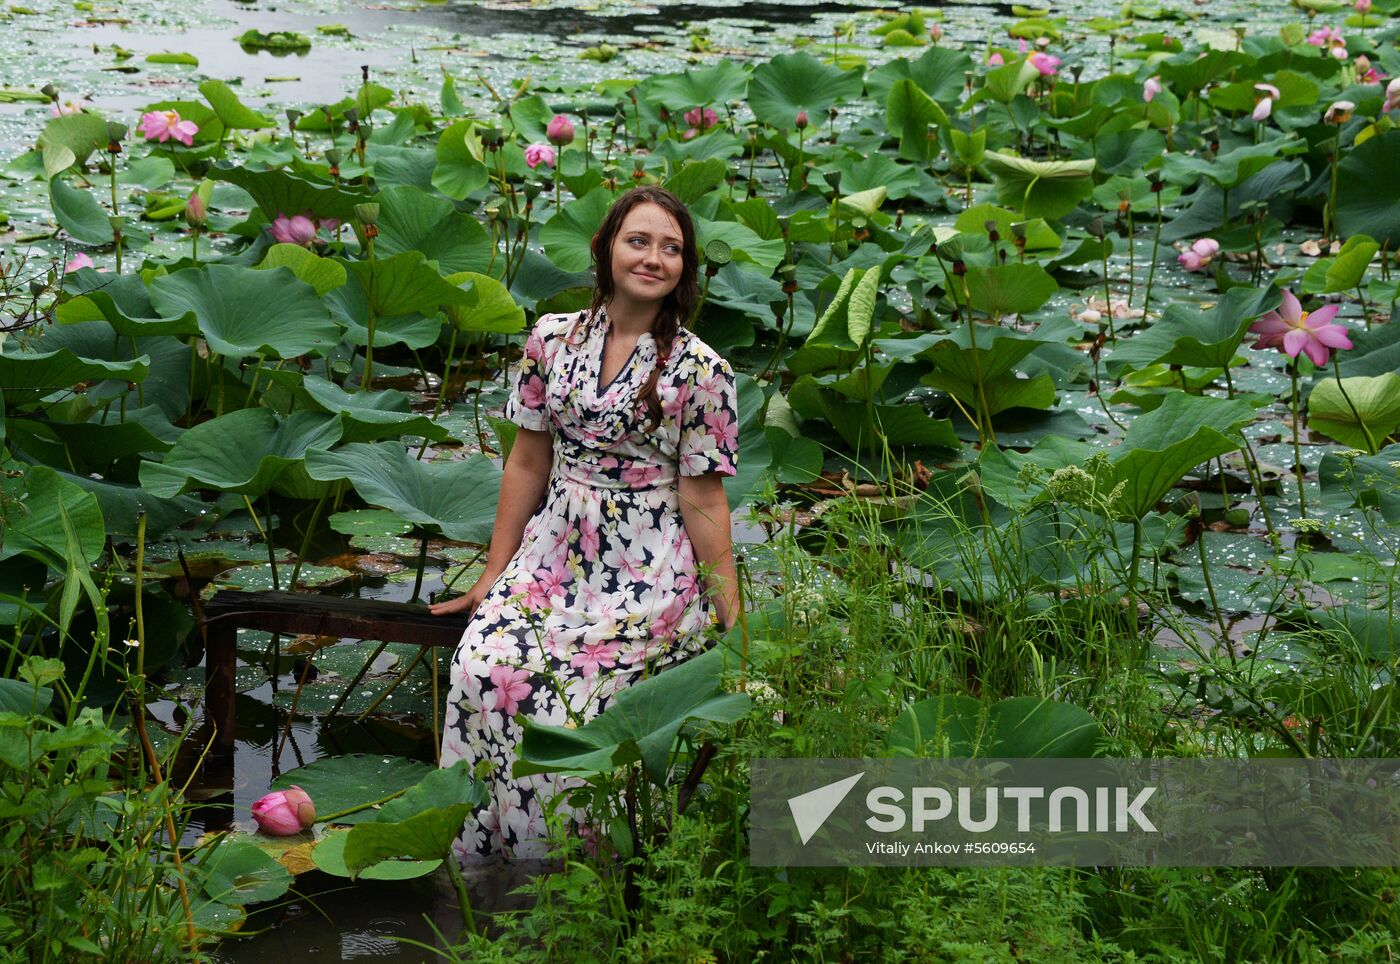 Lotuses blooming in Primorye Territory